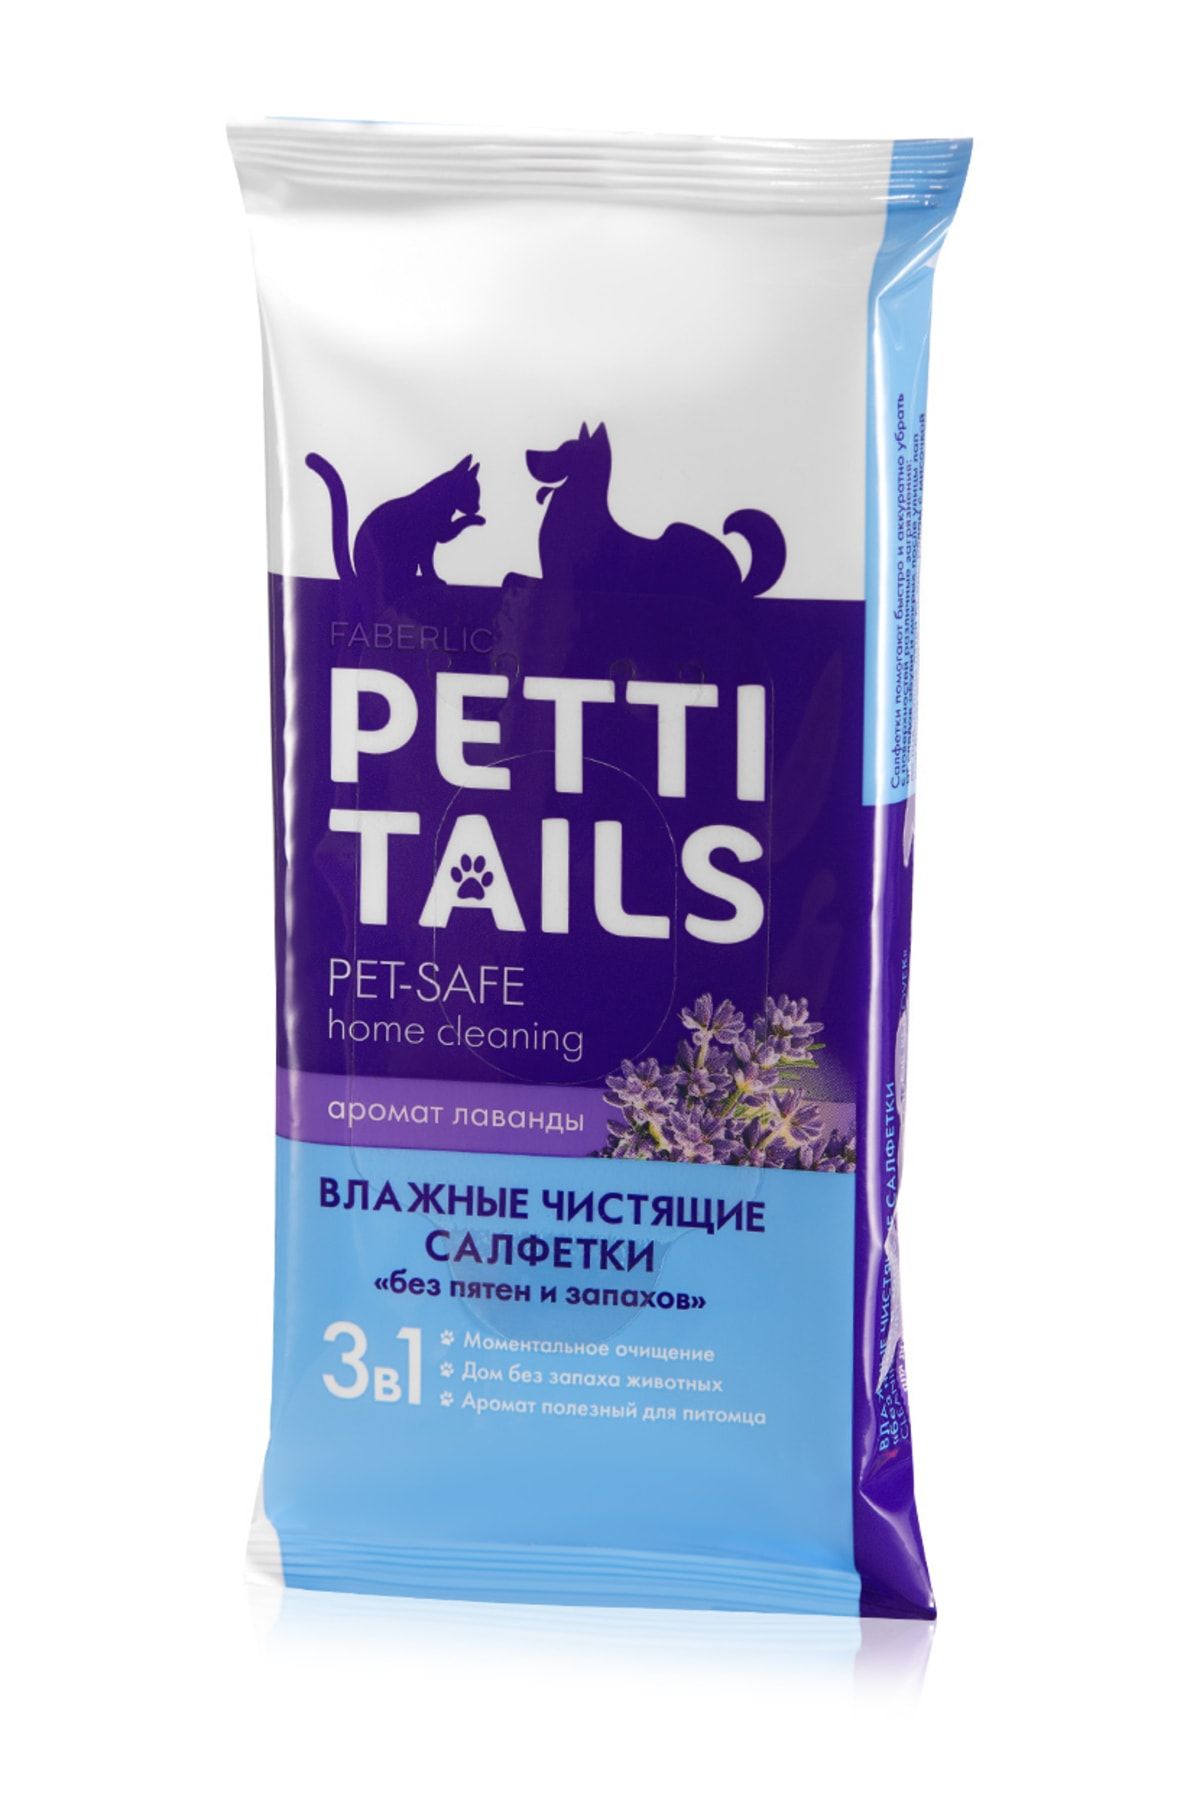 Faberlic Petti Tails Serisi Evcil Hayvanlar Için İz Ve Koku Bırakmaz Islak Mendil